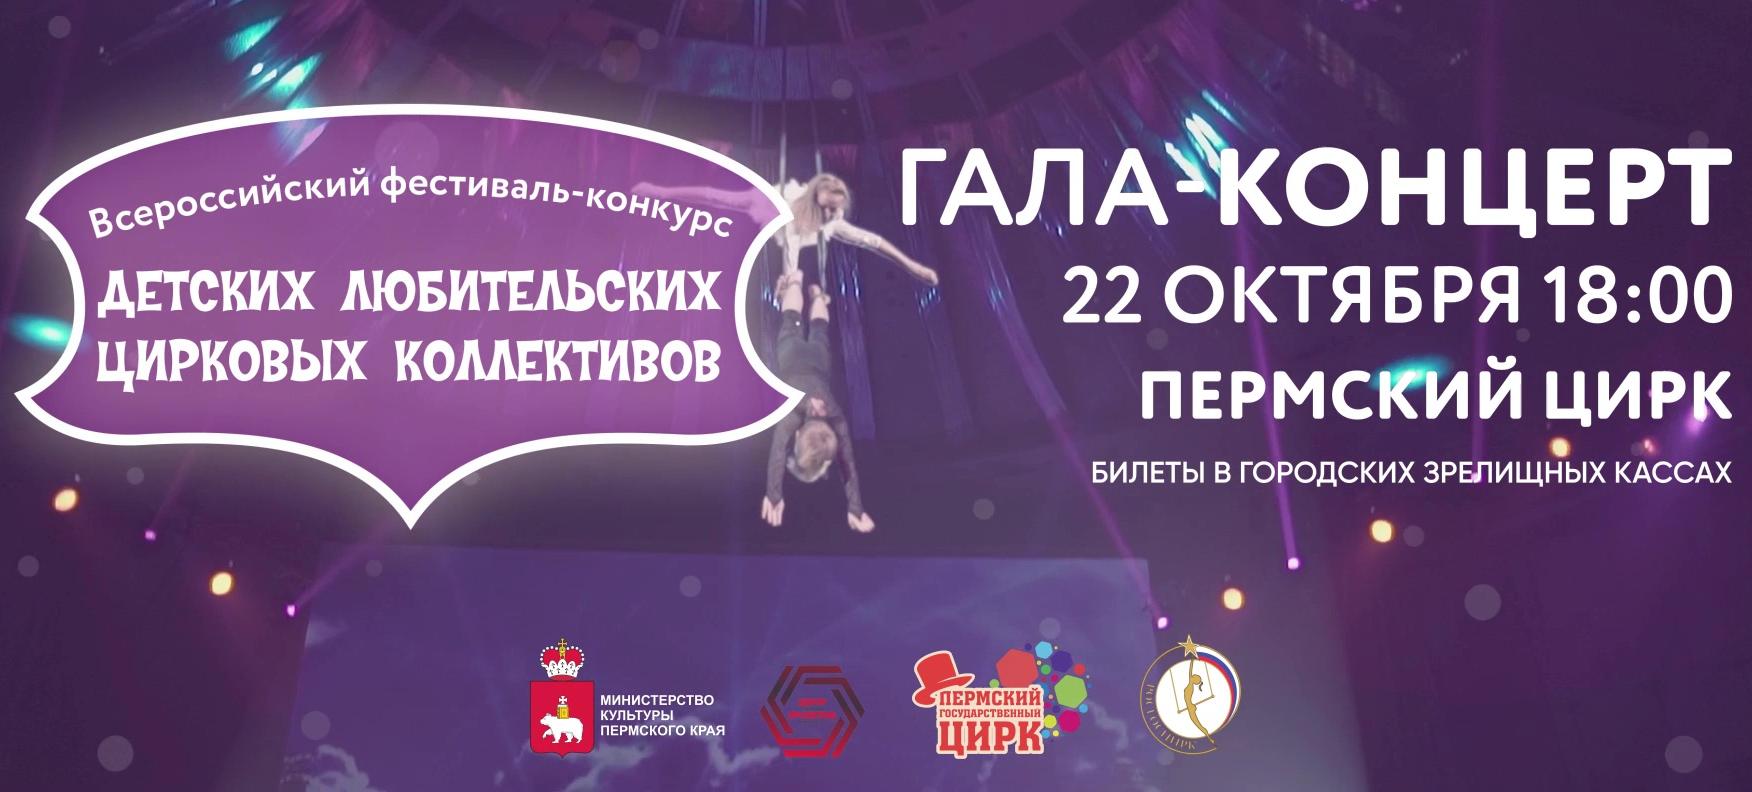 В Перми состоится цирковой фестиваль детских коллективов